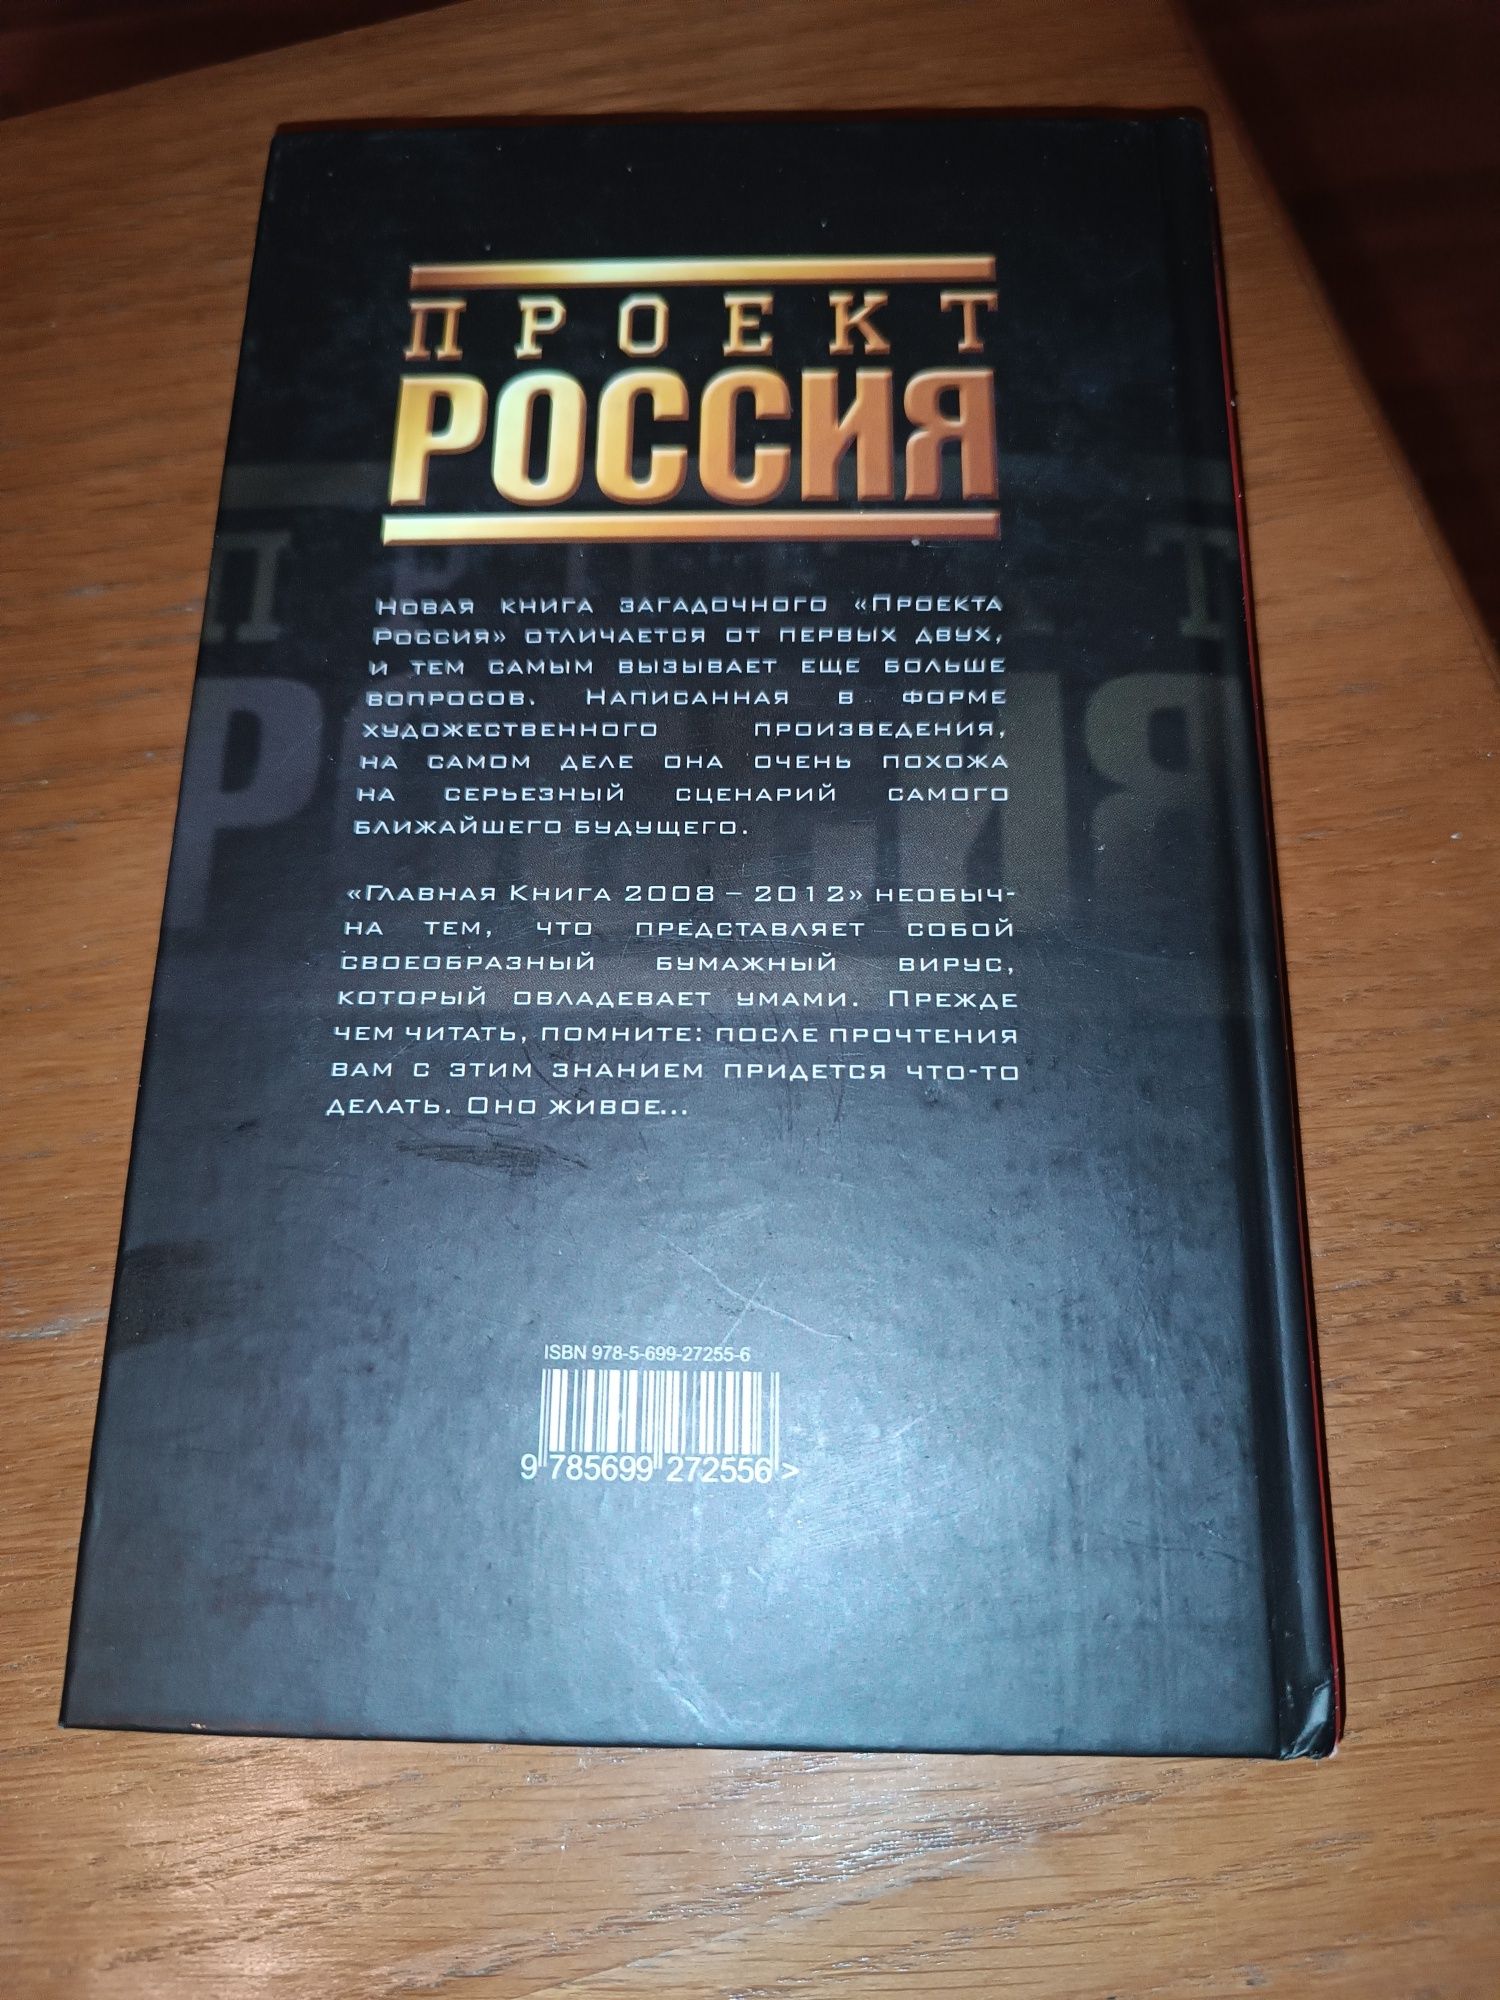 Книга Проект Россия Главная 2008-2012 книга Воины креатива